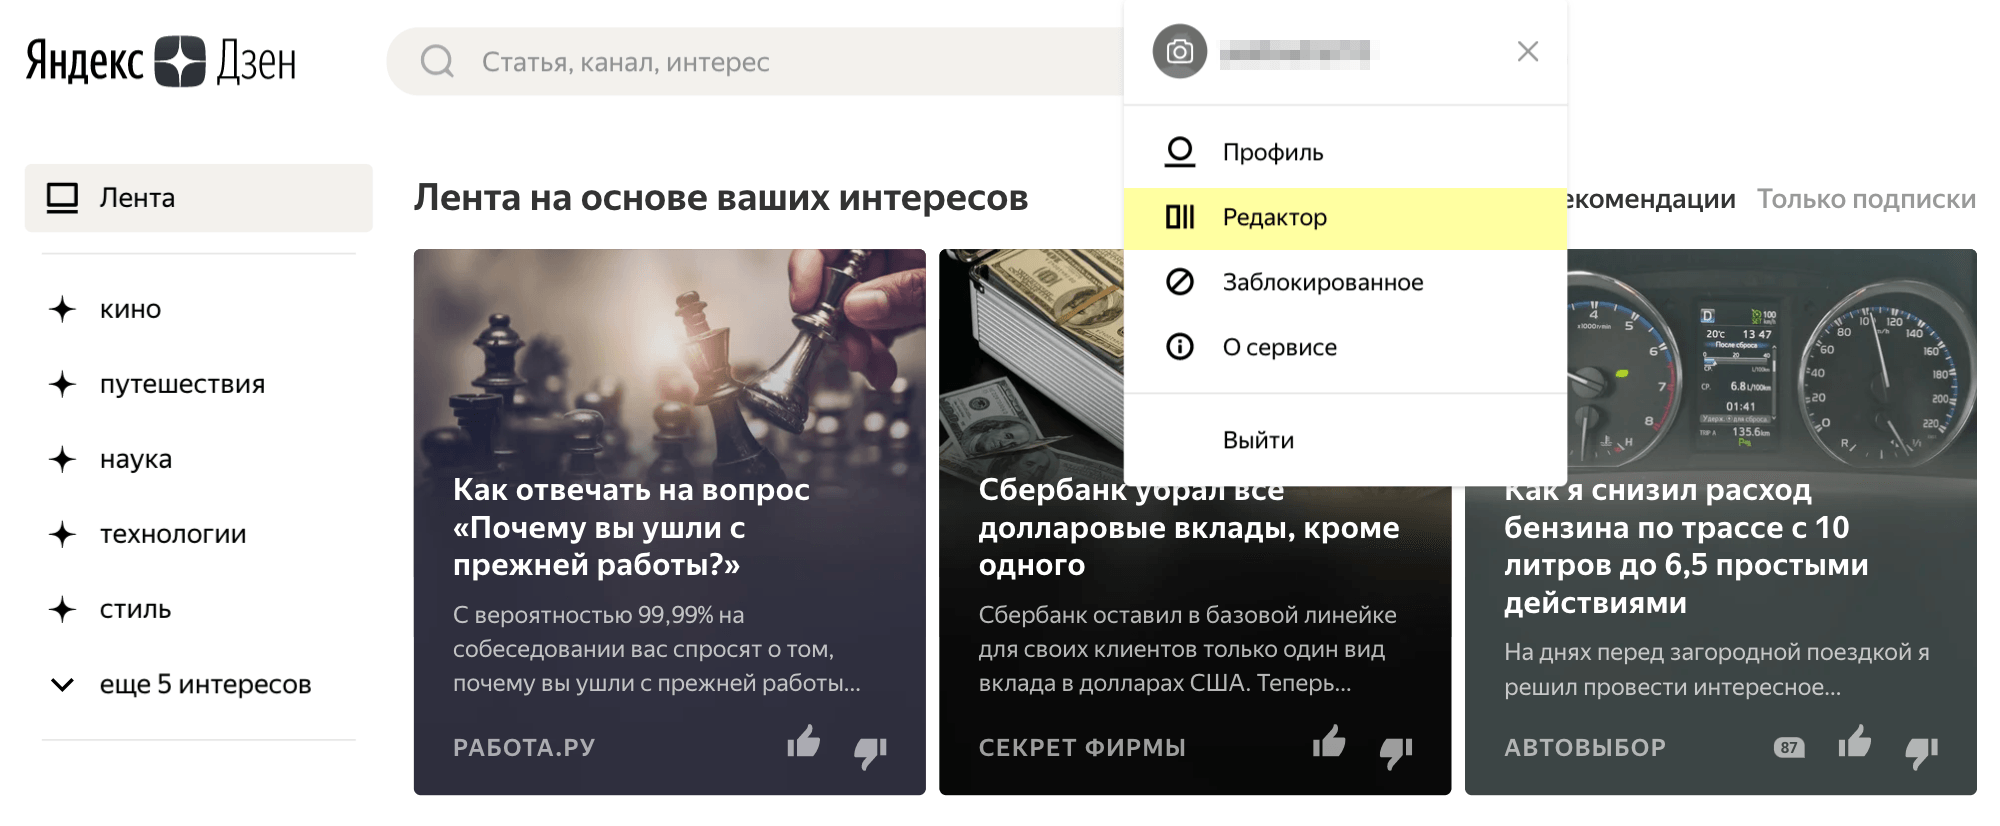 Чтобы завести канал, нужно кликнуть на слово «Дзен» на главной странице Яндекса. А потом в правом верхнем углу нажать на свой профиль и выбрать «Редактор»